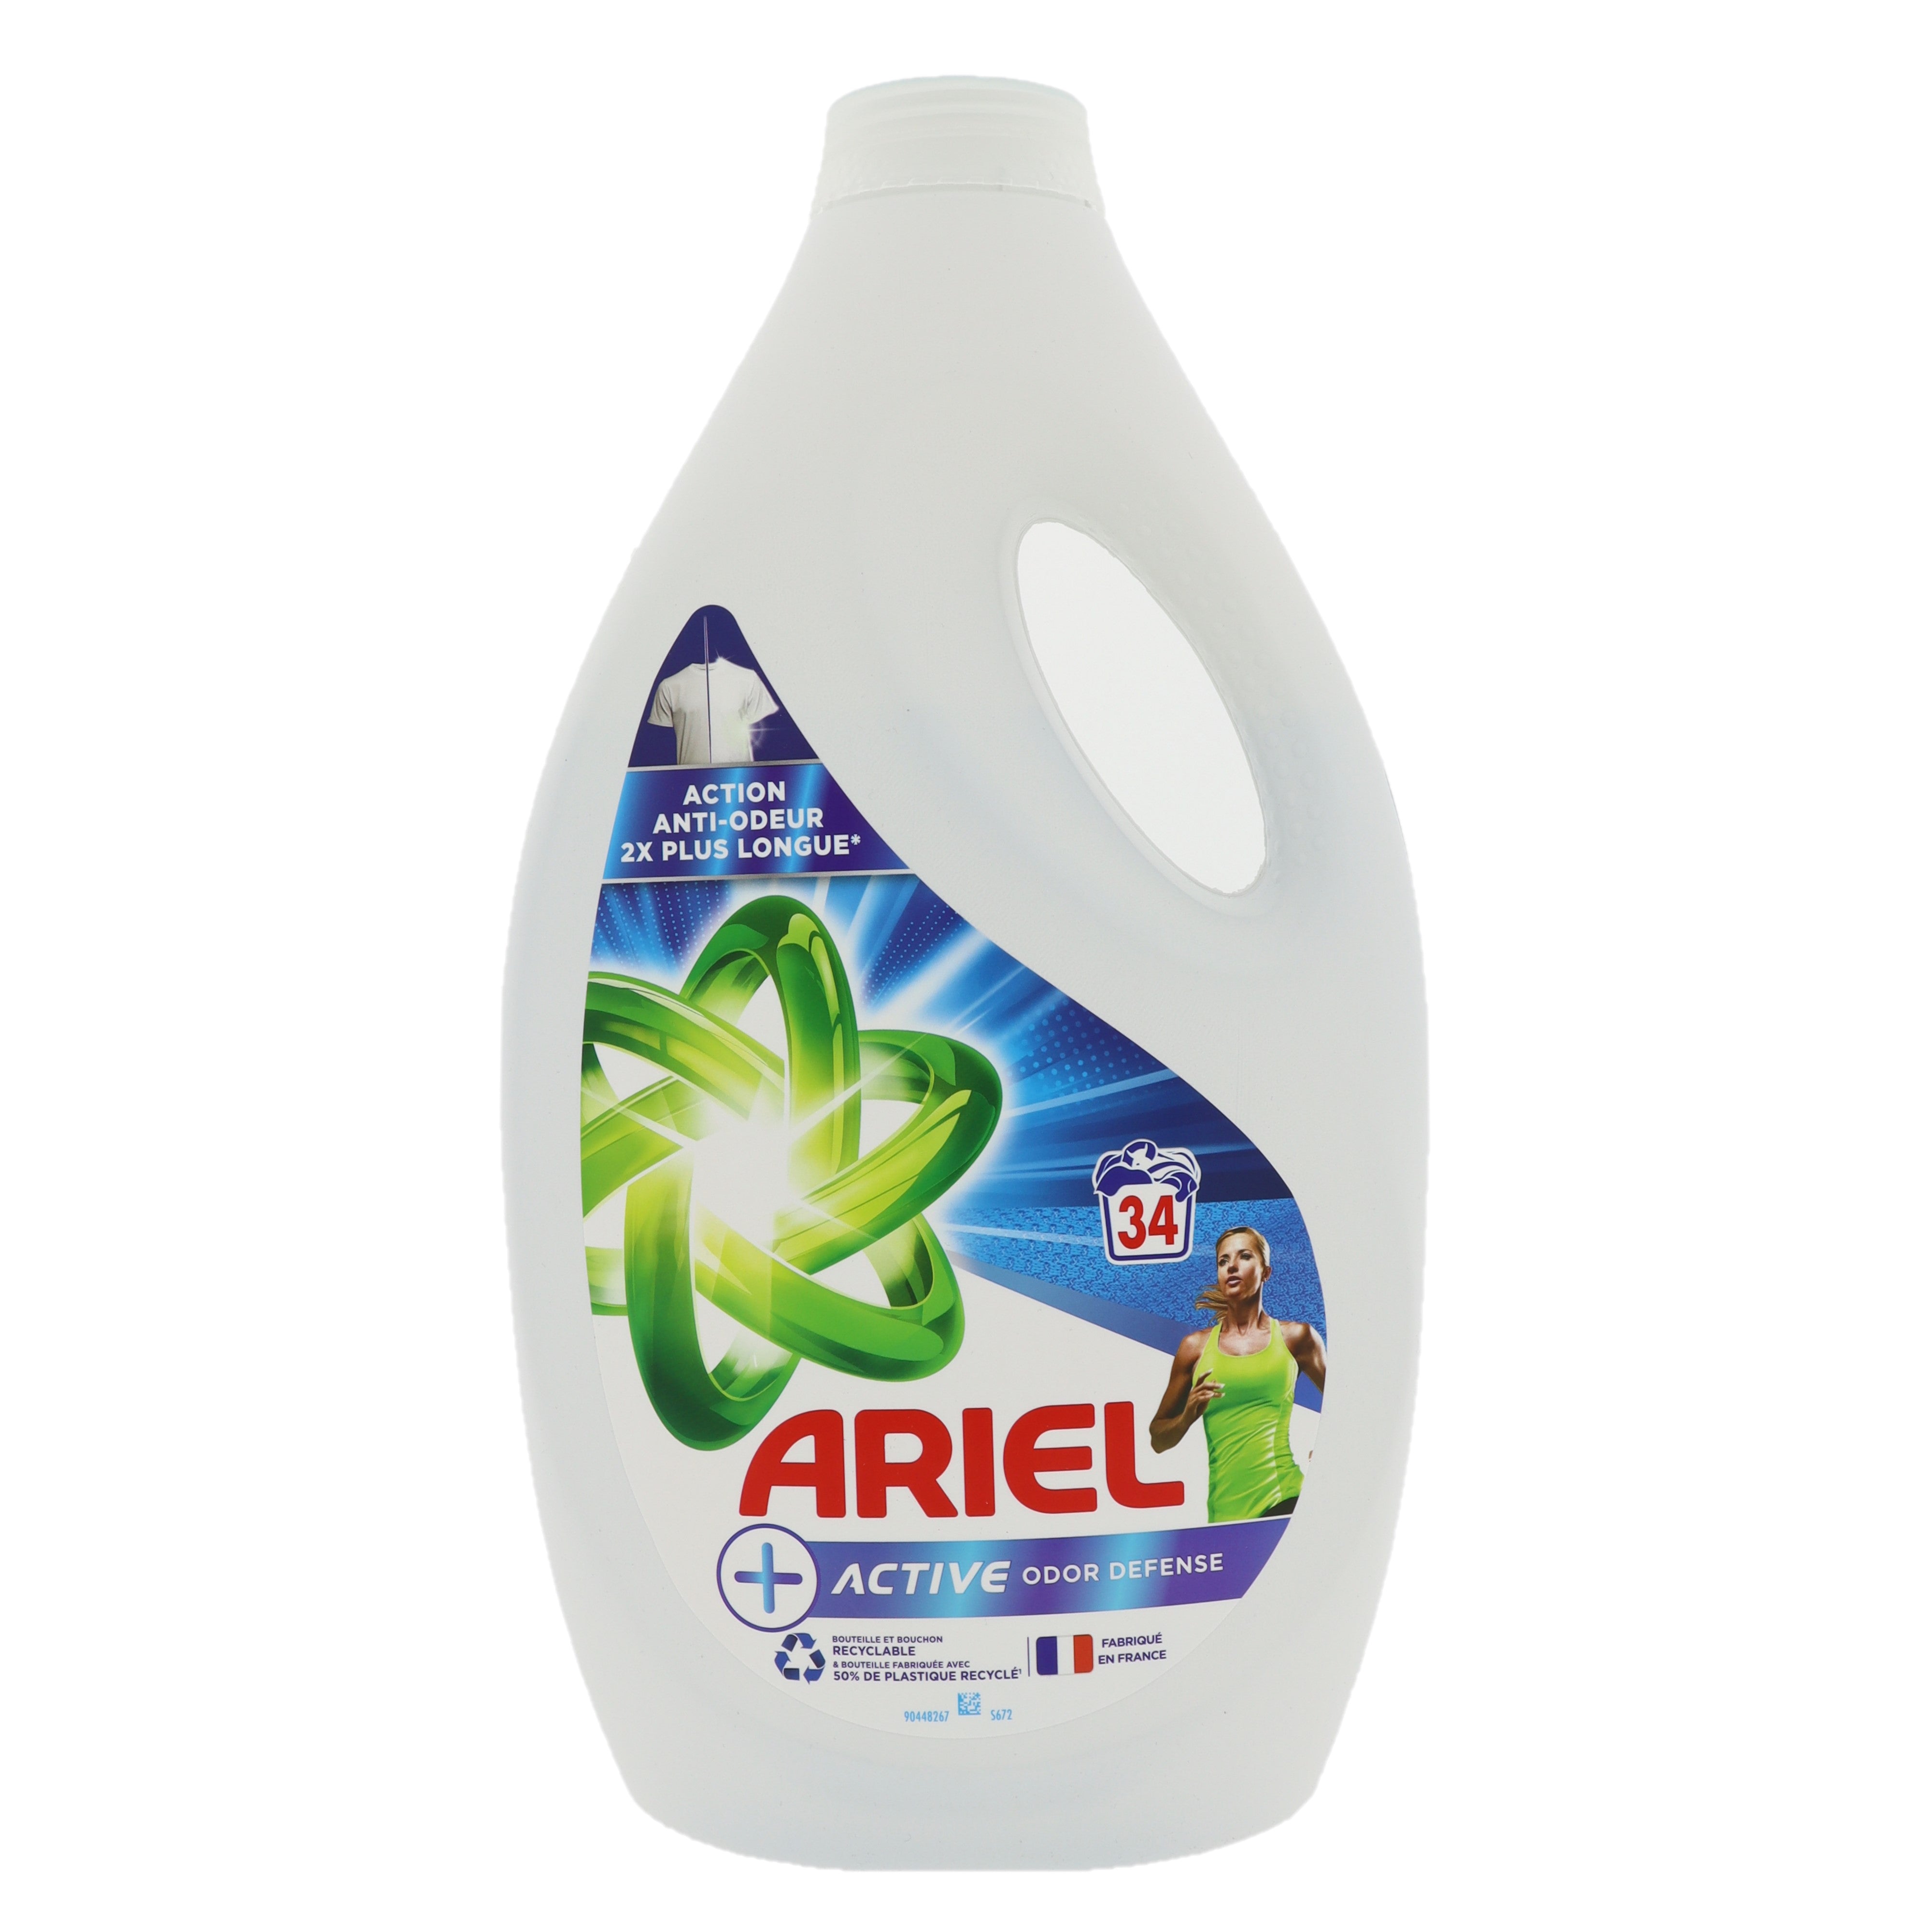 Ariel Active Odor Defense vloeibaar wasmiddel 1.7L 34 wasbeurten